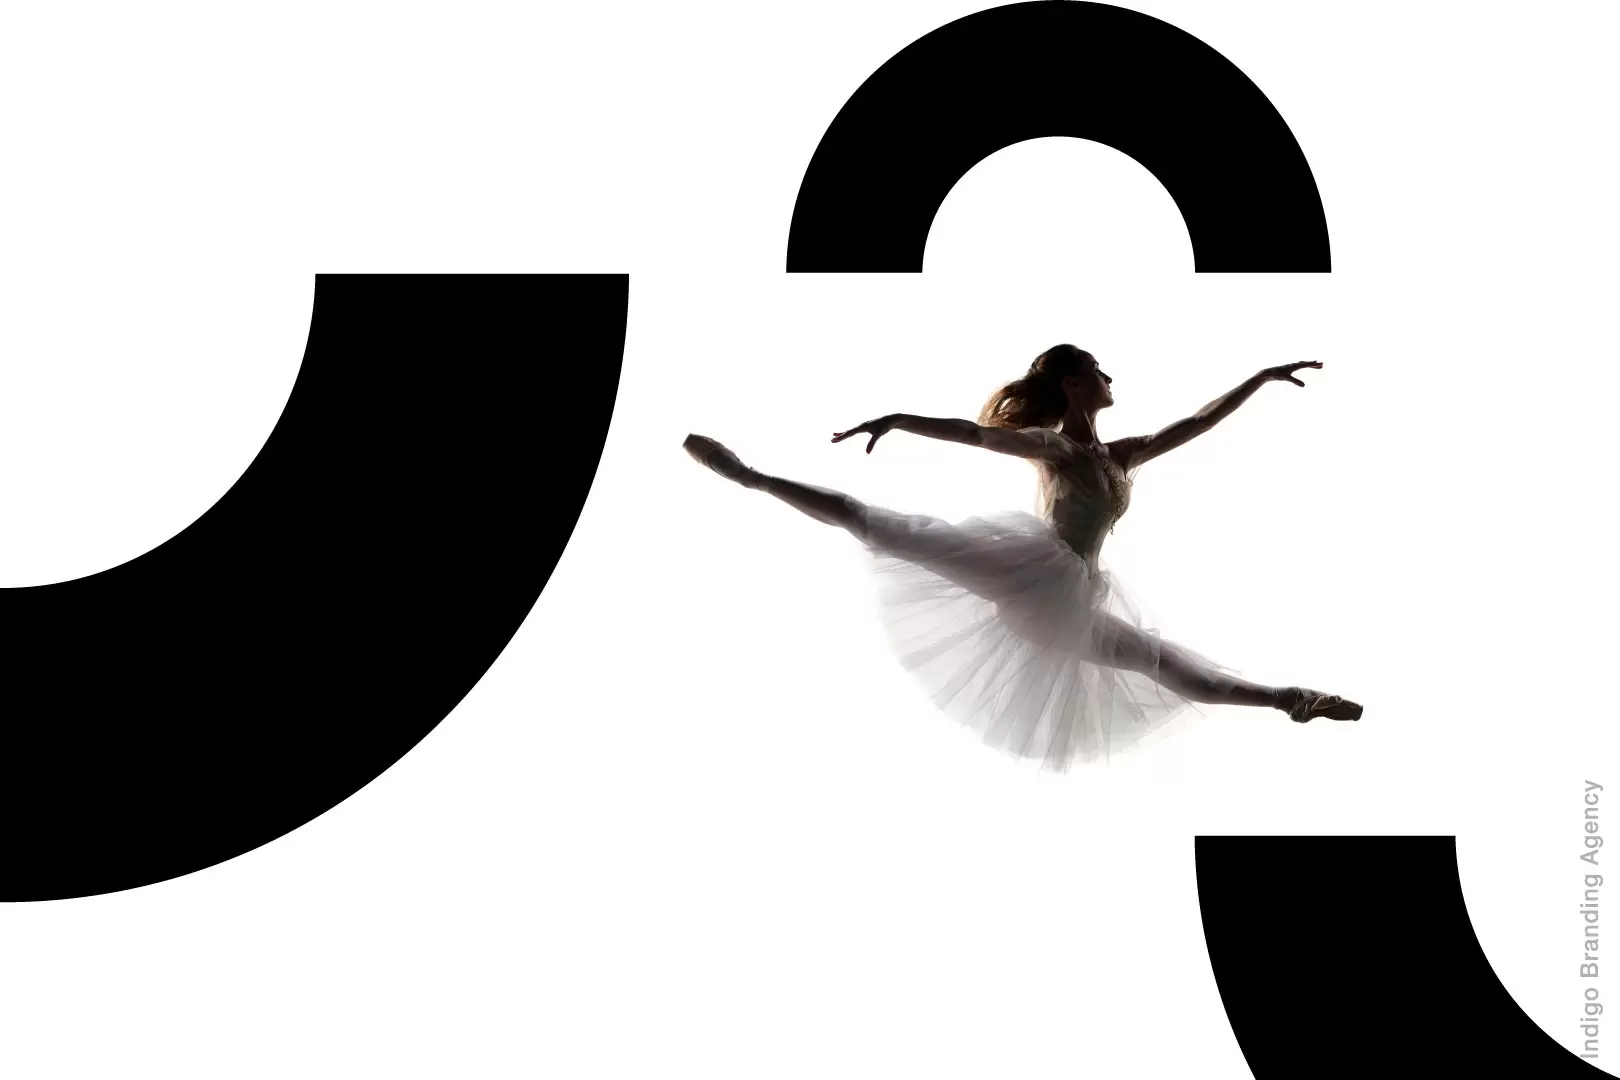 Фирменный стиль, Ребрендинг, Логотип, Визуальный стиль, Визуальный образ, Indigo Branding Agency, Armenian National Opera and Ballet Theatre